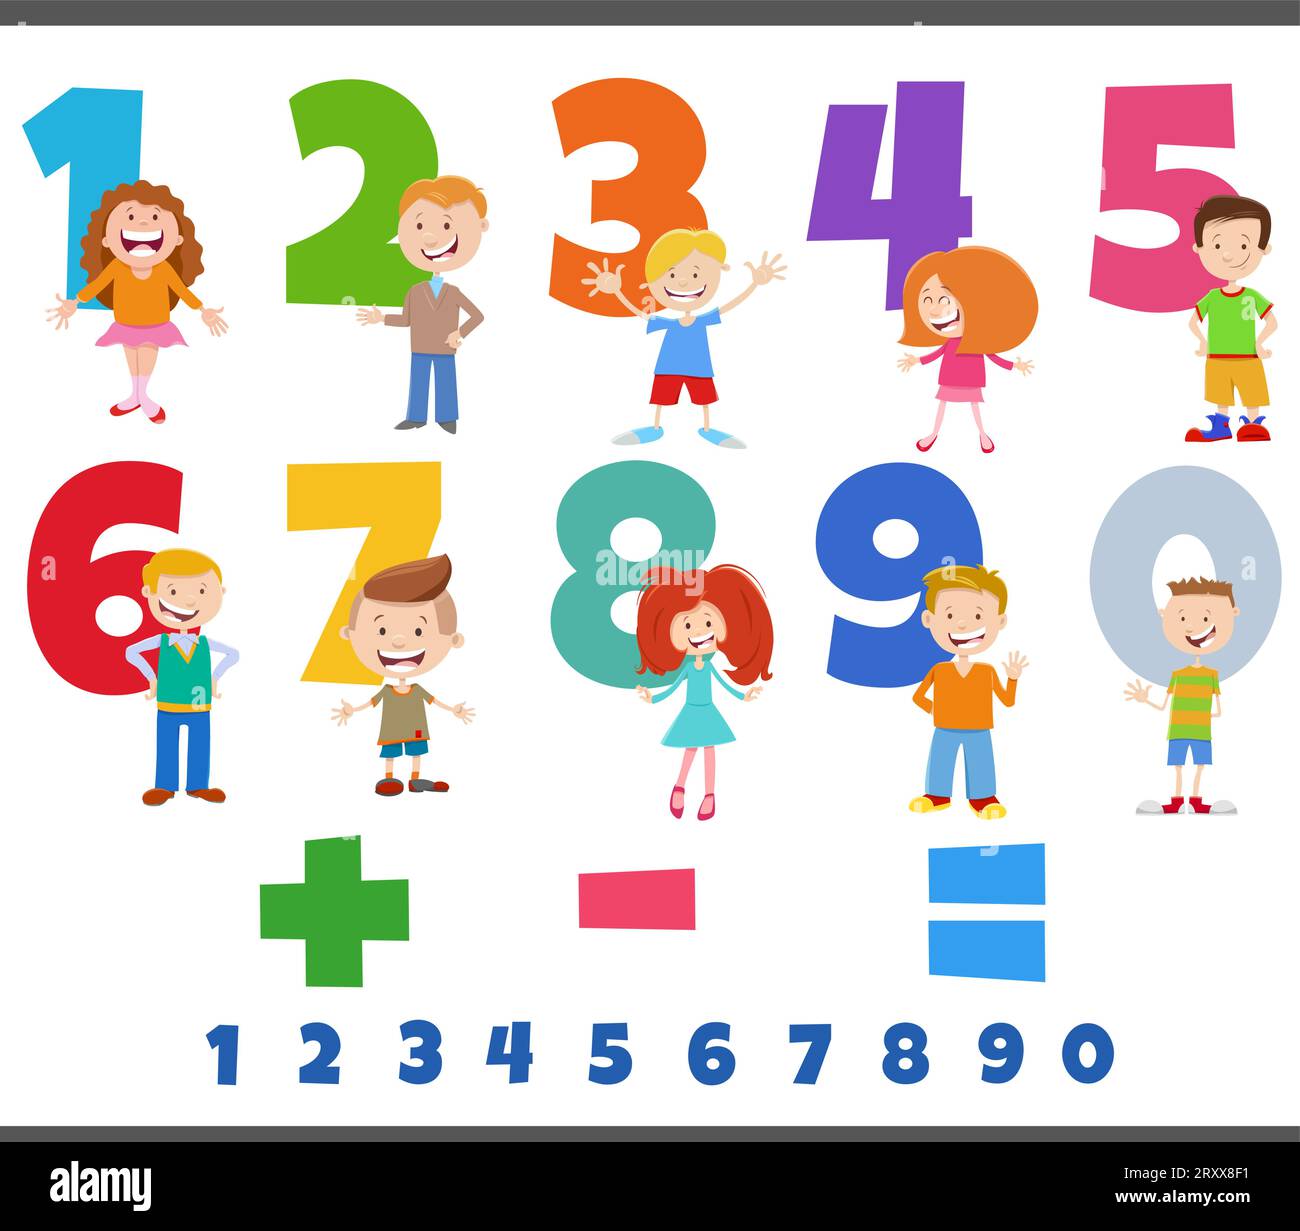 Libro de Actividades Preescolar 4-5-6 años: 170 páginas con actividades y  juegos educativos para aprender y divertirse (Alfabeto - Números -  para